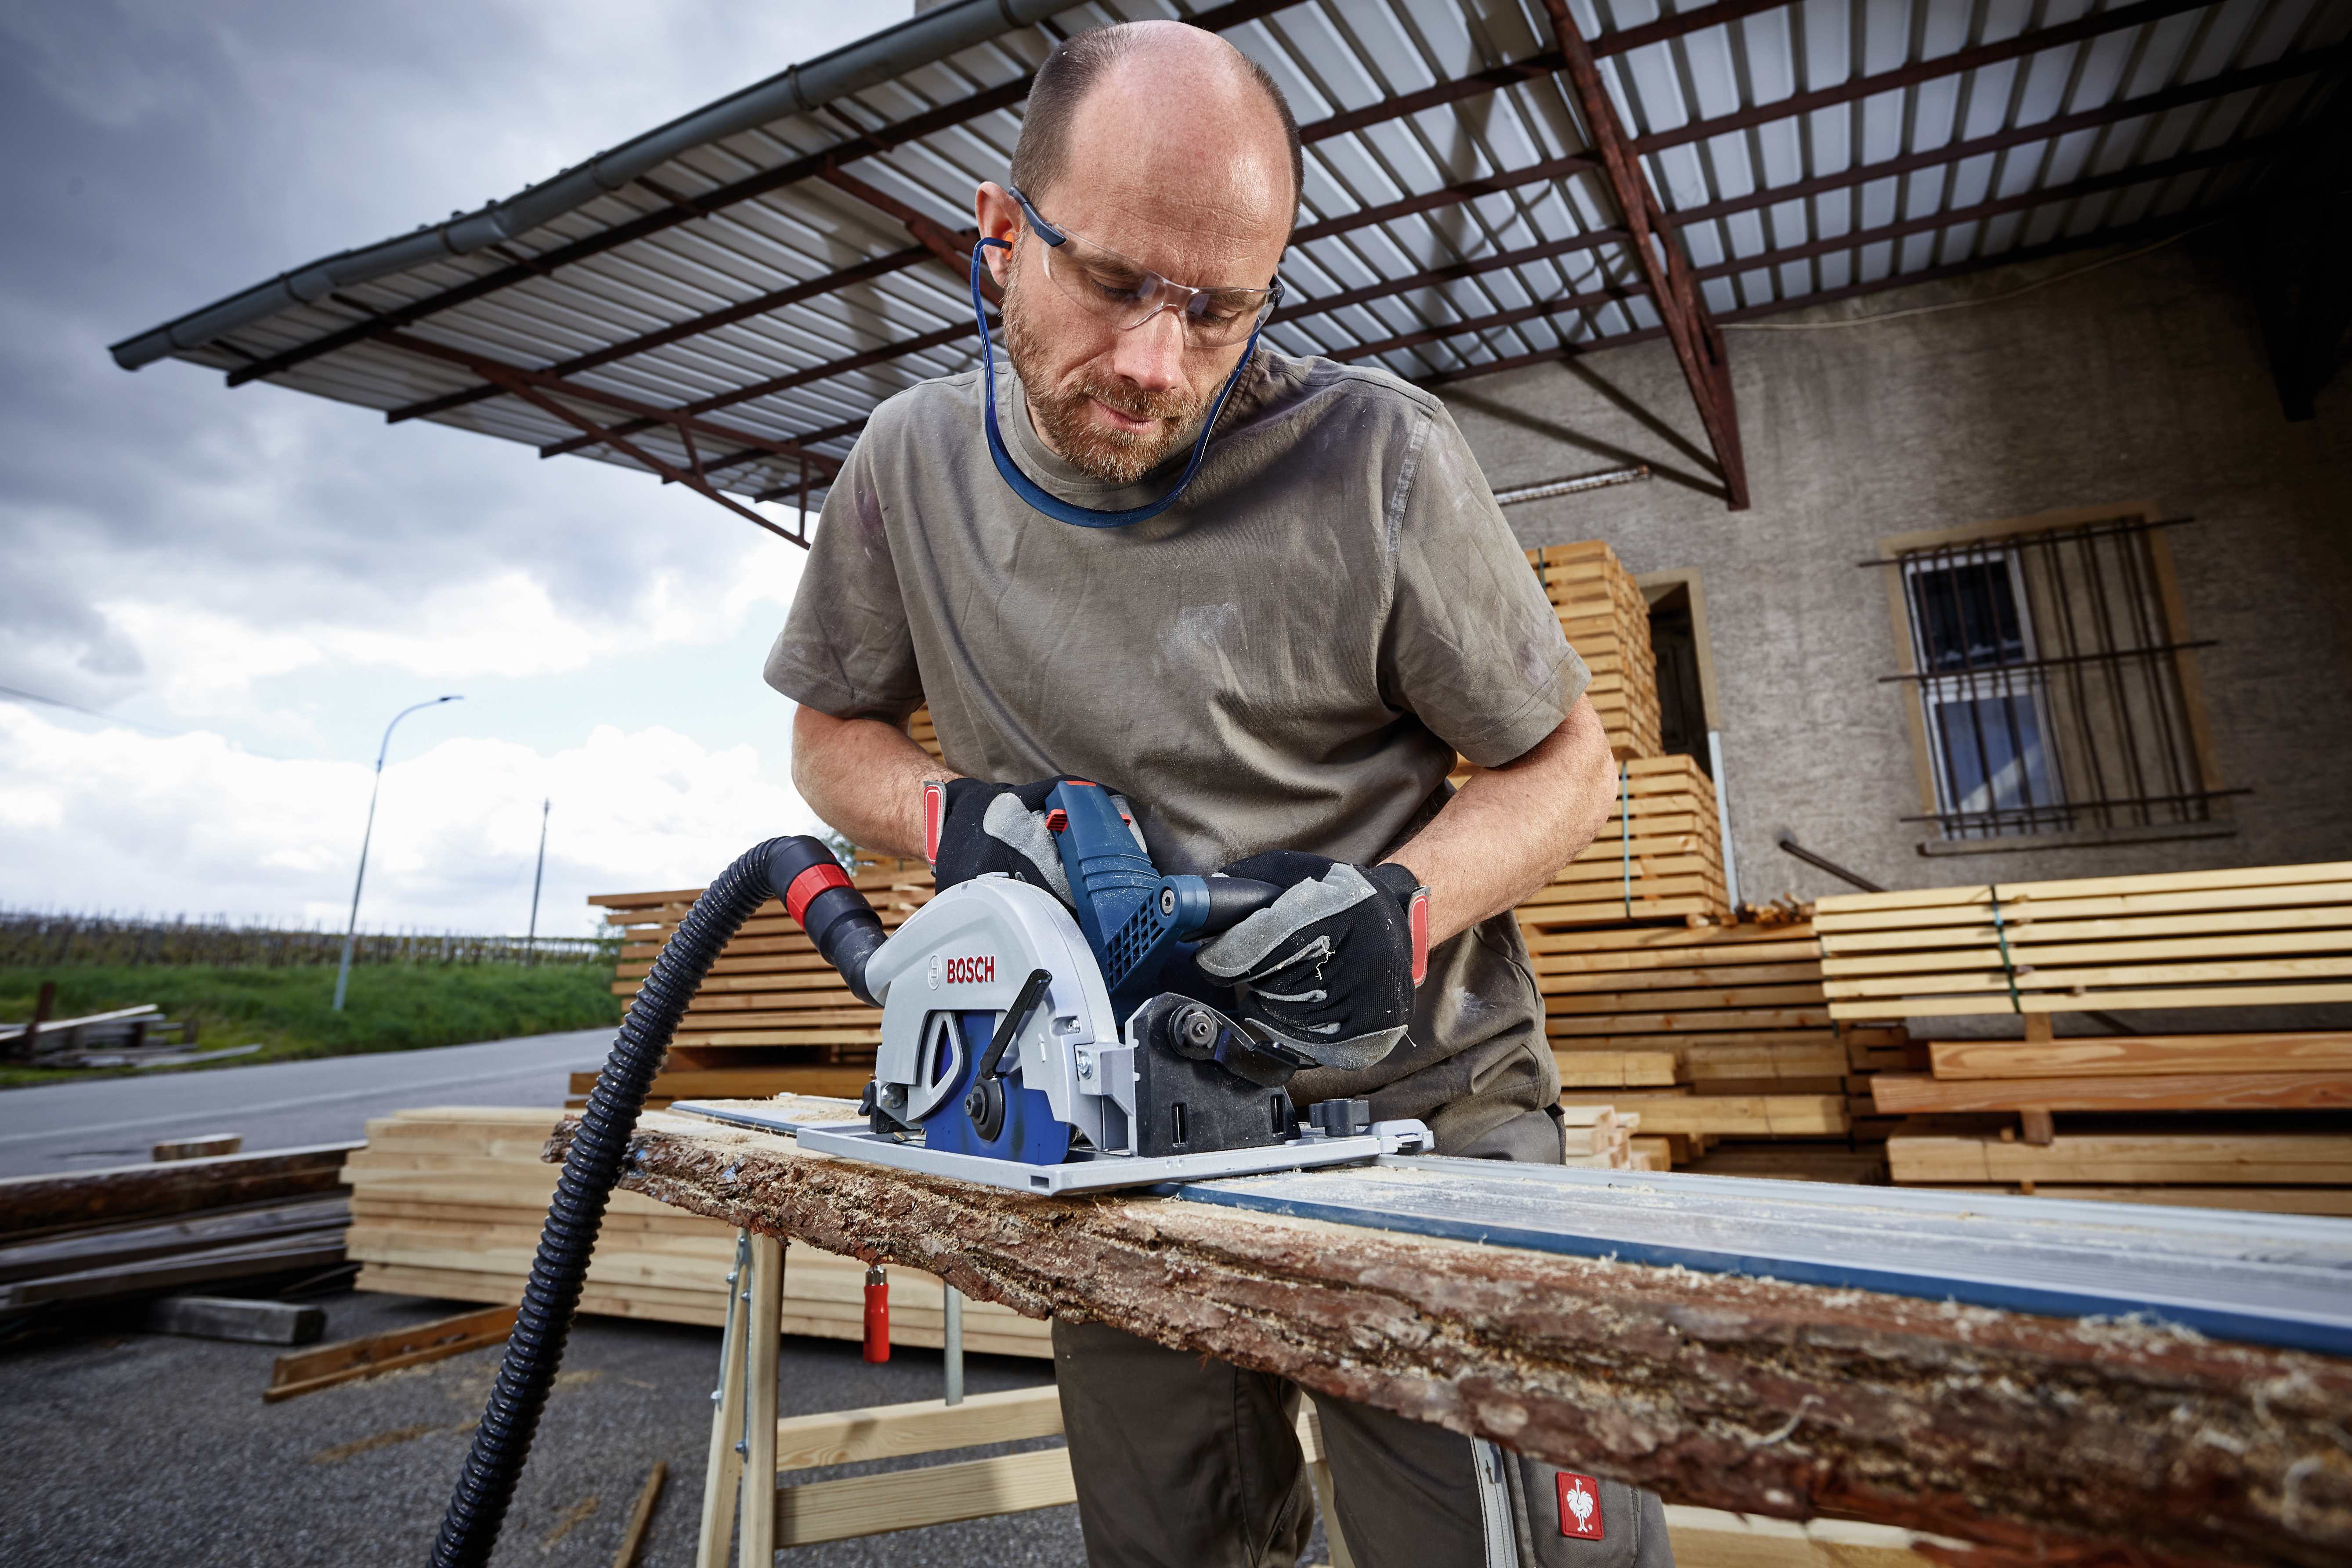 Utensili da taglio Bosch Professional BITURBO per professionisti: nuovo top di gamma per la lavorazione del legno